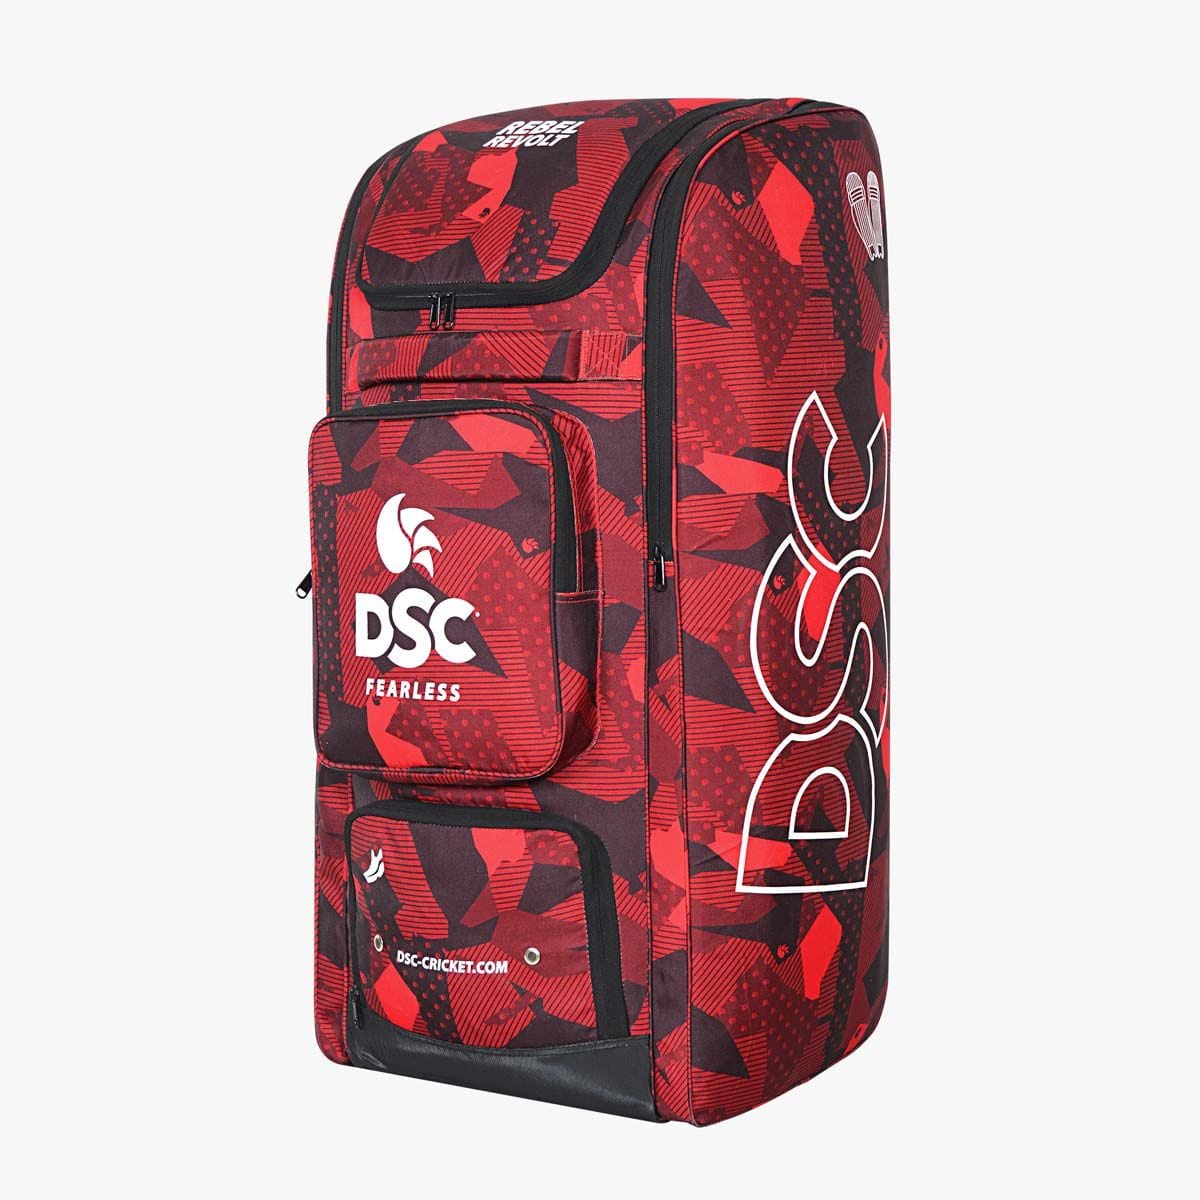 Adidas Cricket Bags DSC Rebel Revolt Duffle Cricket Bag